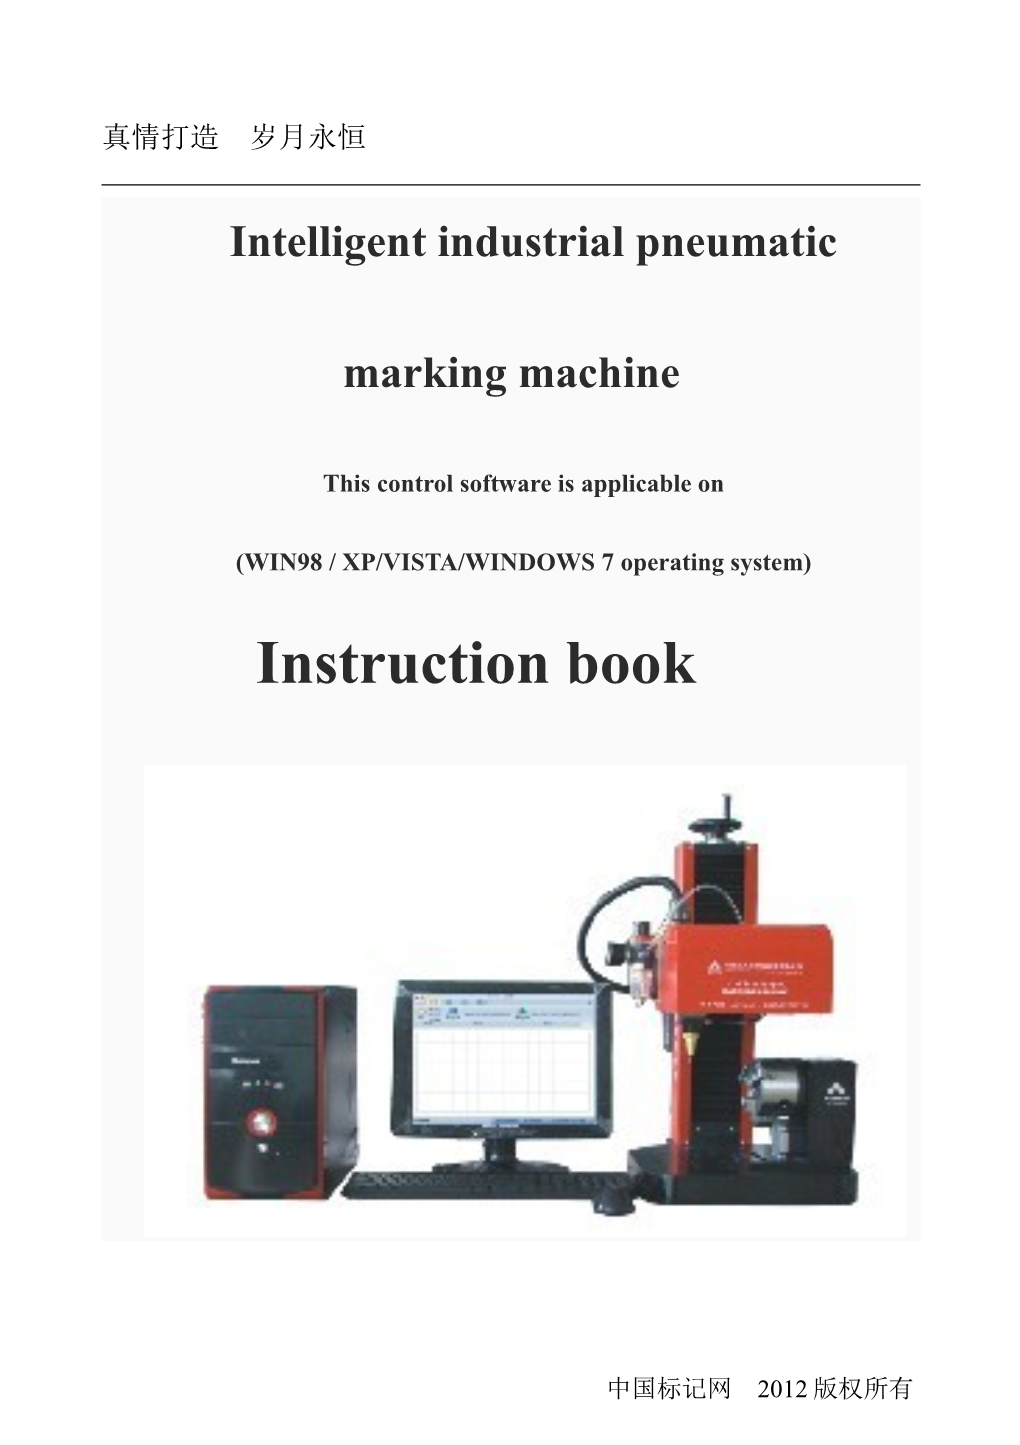 Intelligent Industrial Pneumatic Marking Machine